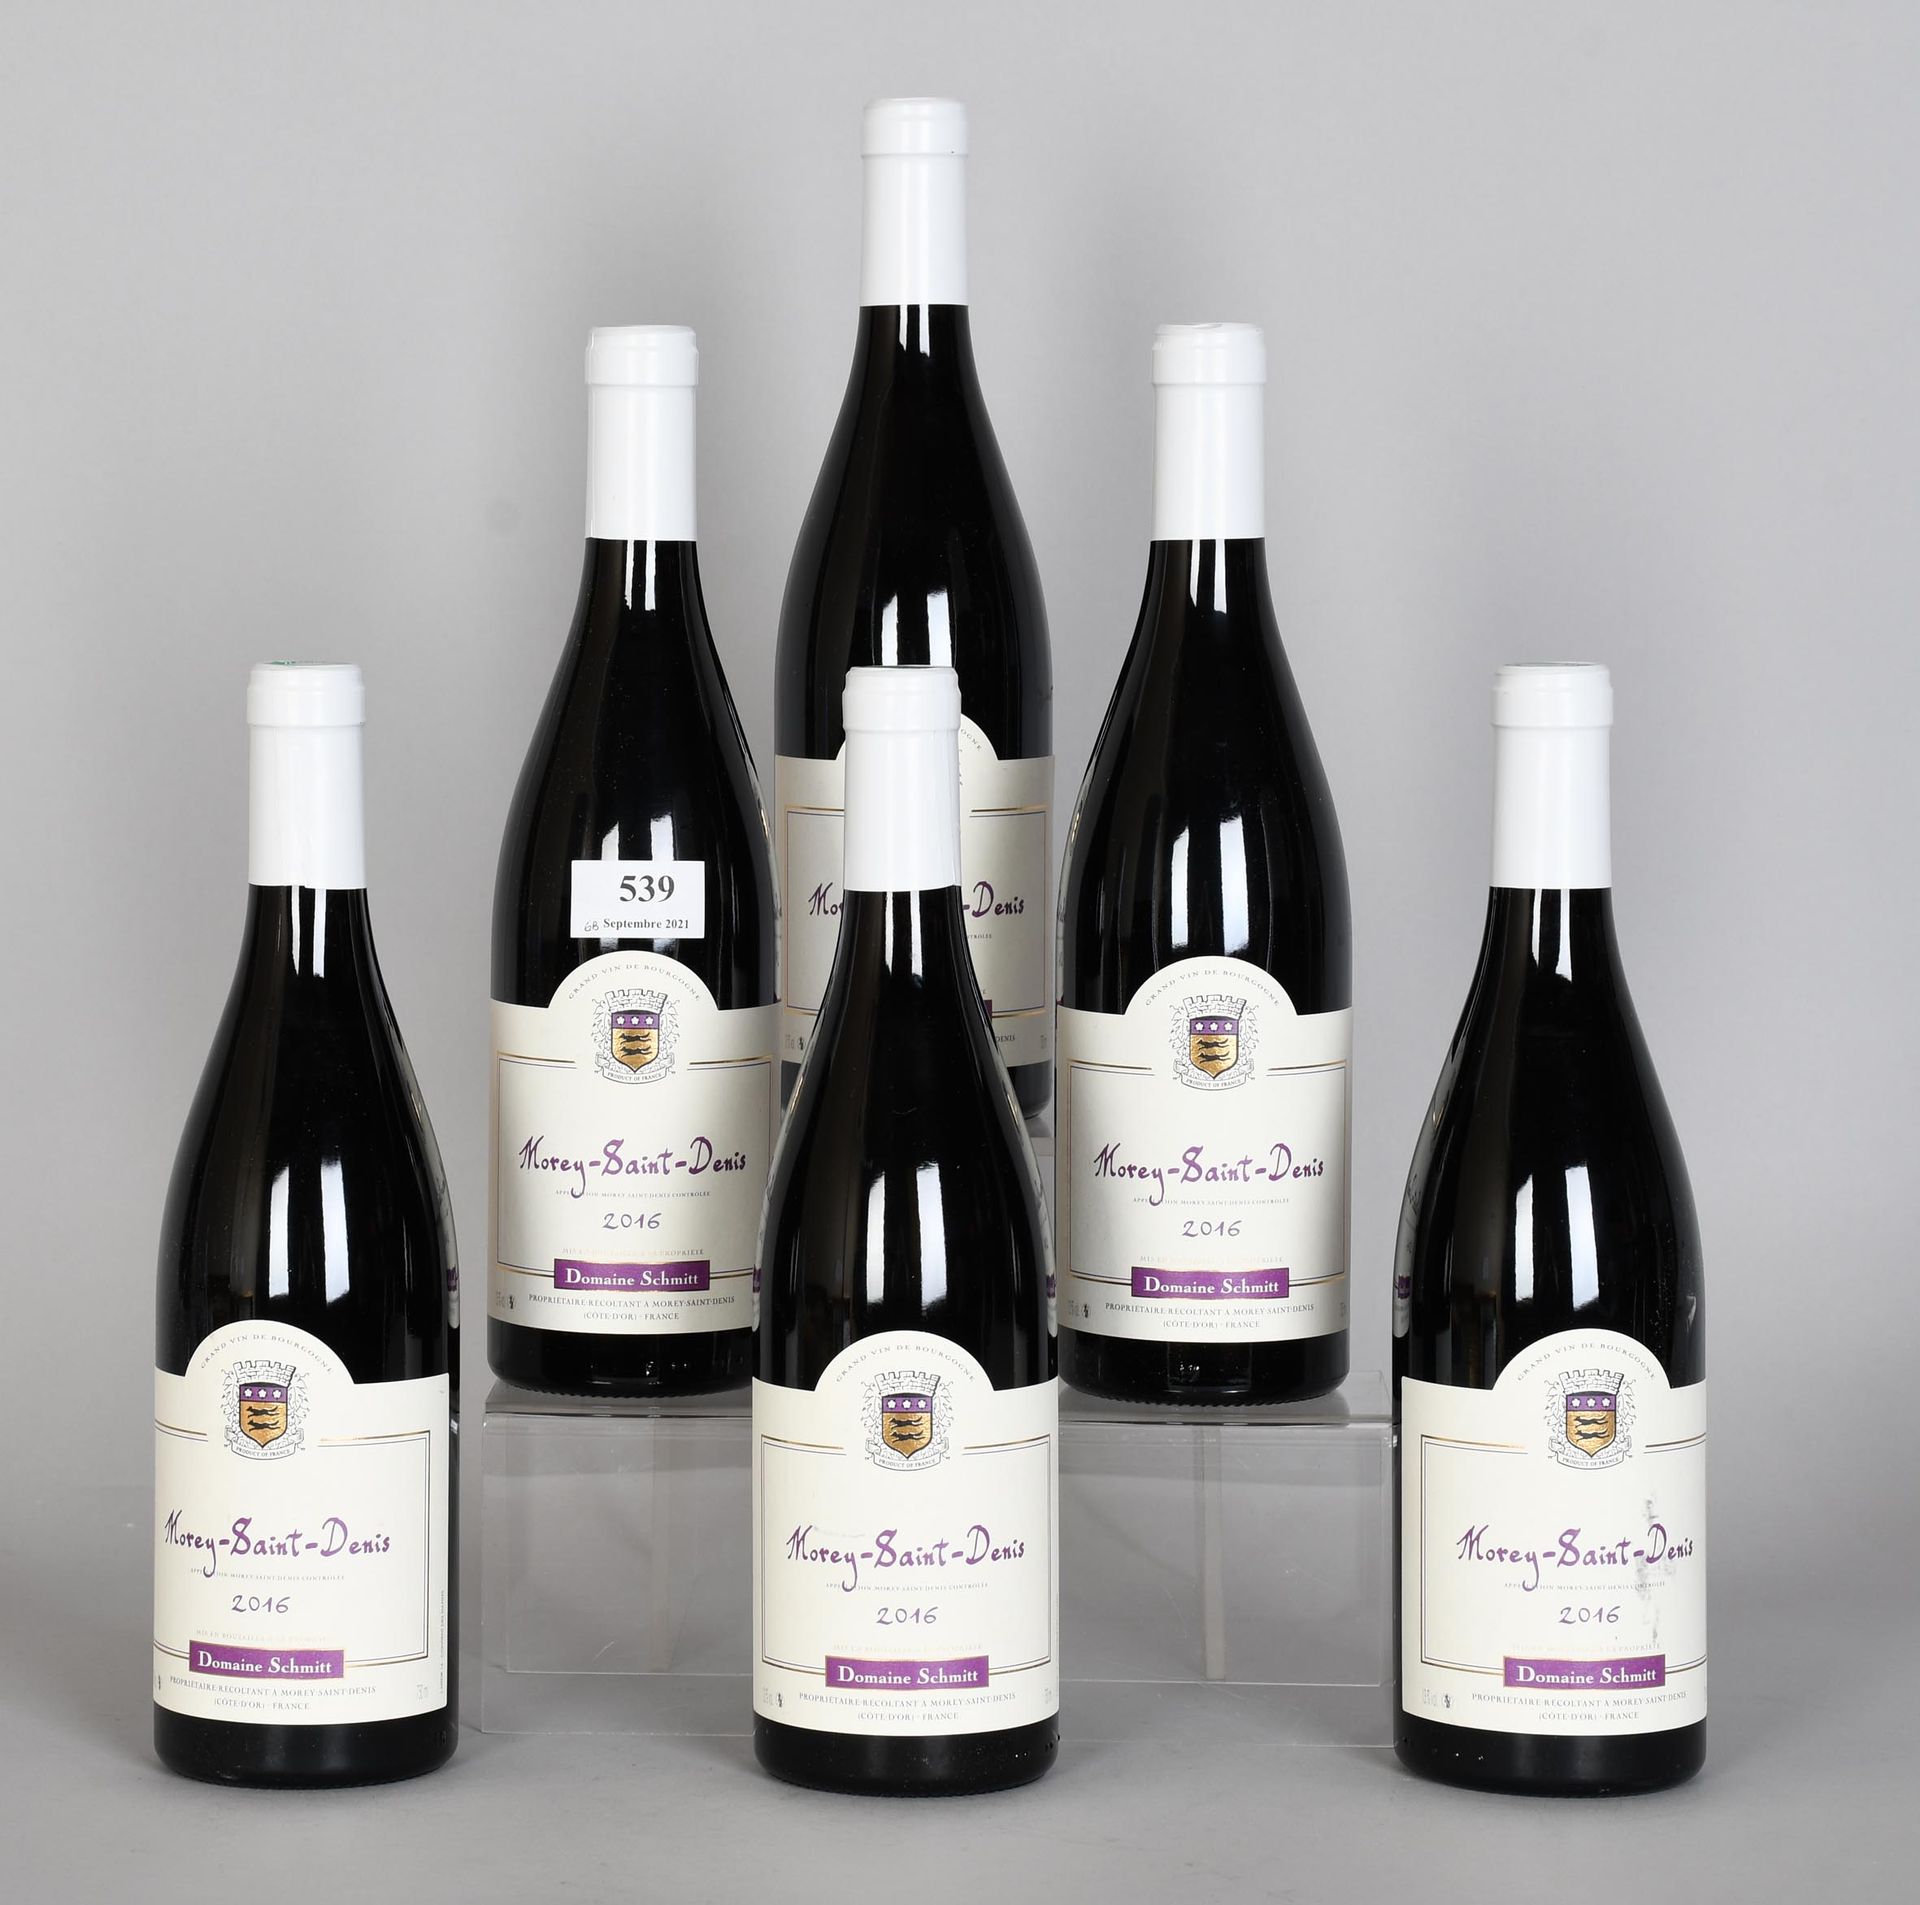 Null Morey-Saint-Denis 2016 - Mise propriété - Six bouteilles de vin

Grand vin &hellip;